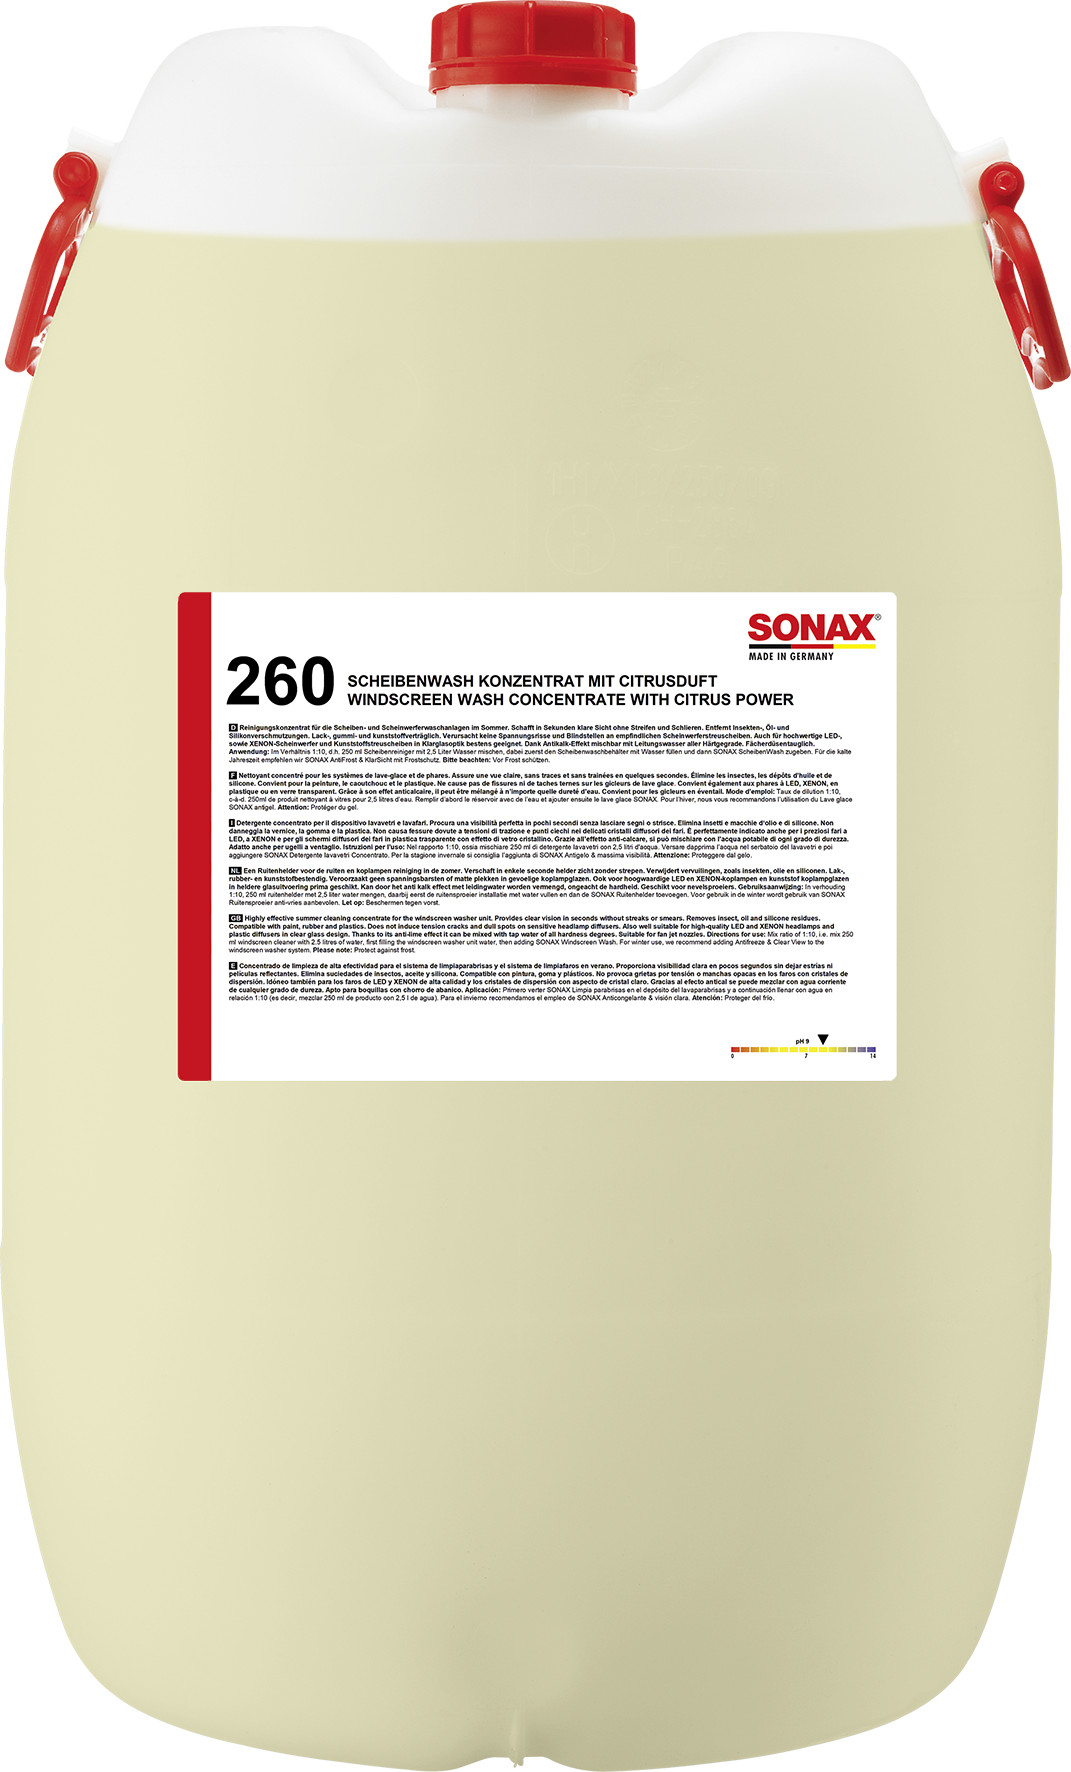 SONAX Windscreen Wash concentré1:10 citrus 60L